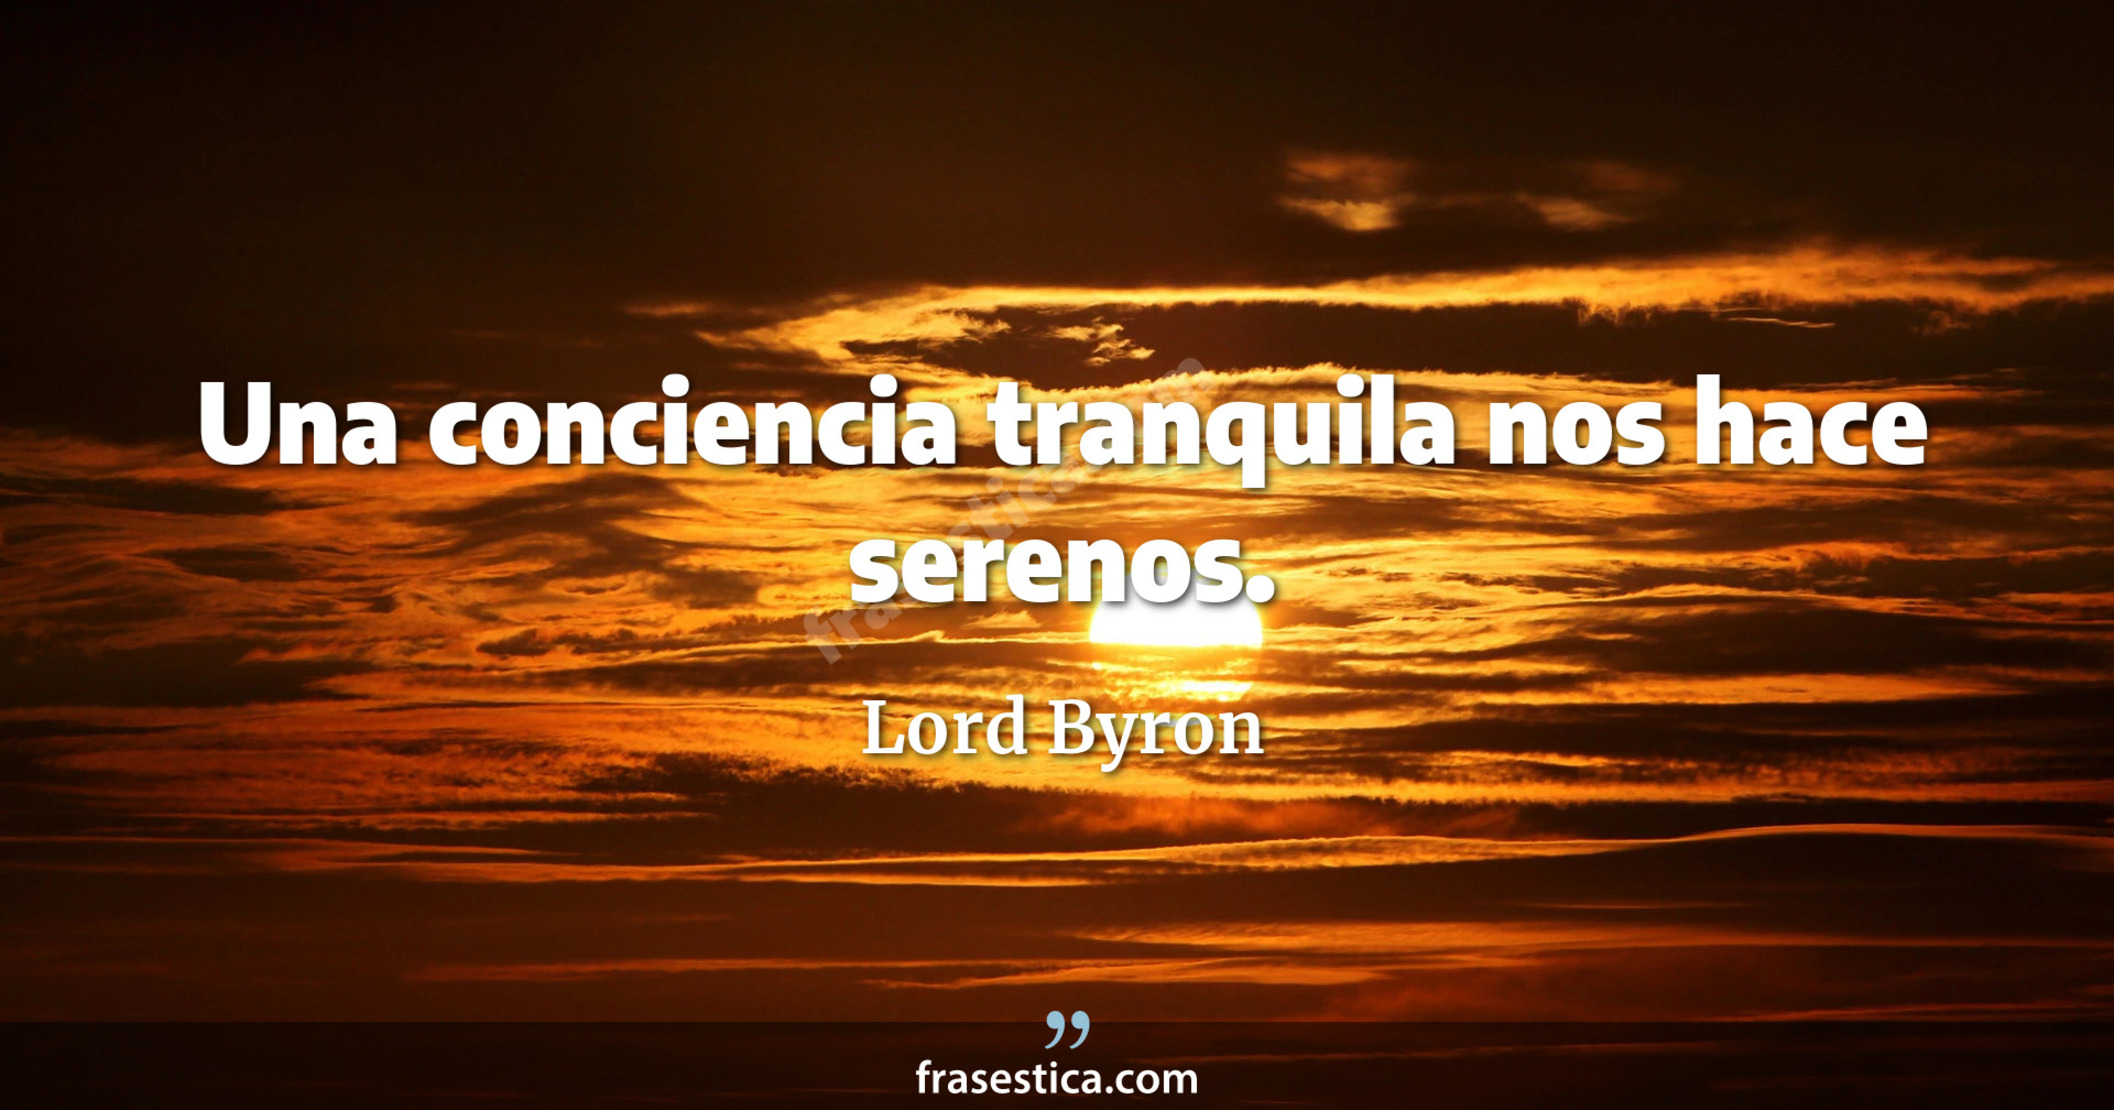 Una conciencia tranquila nos hace serenos. - Lord Byron